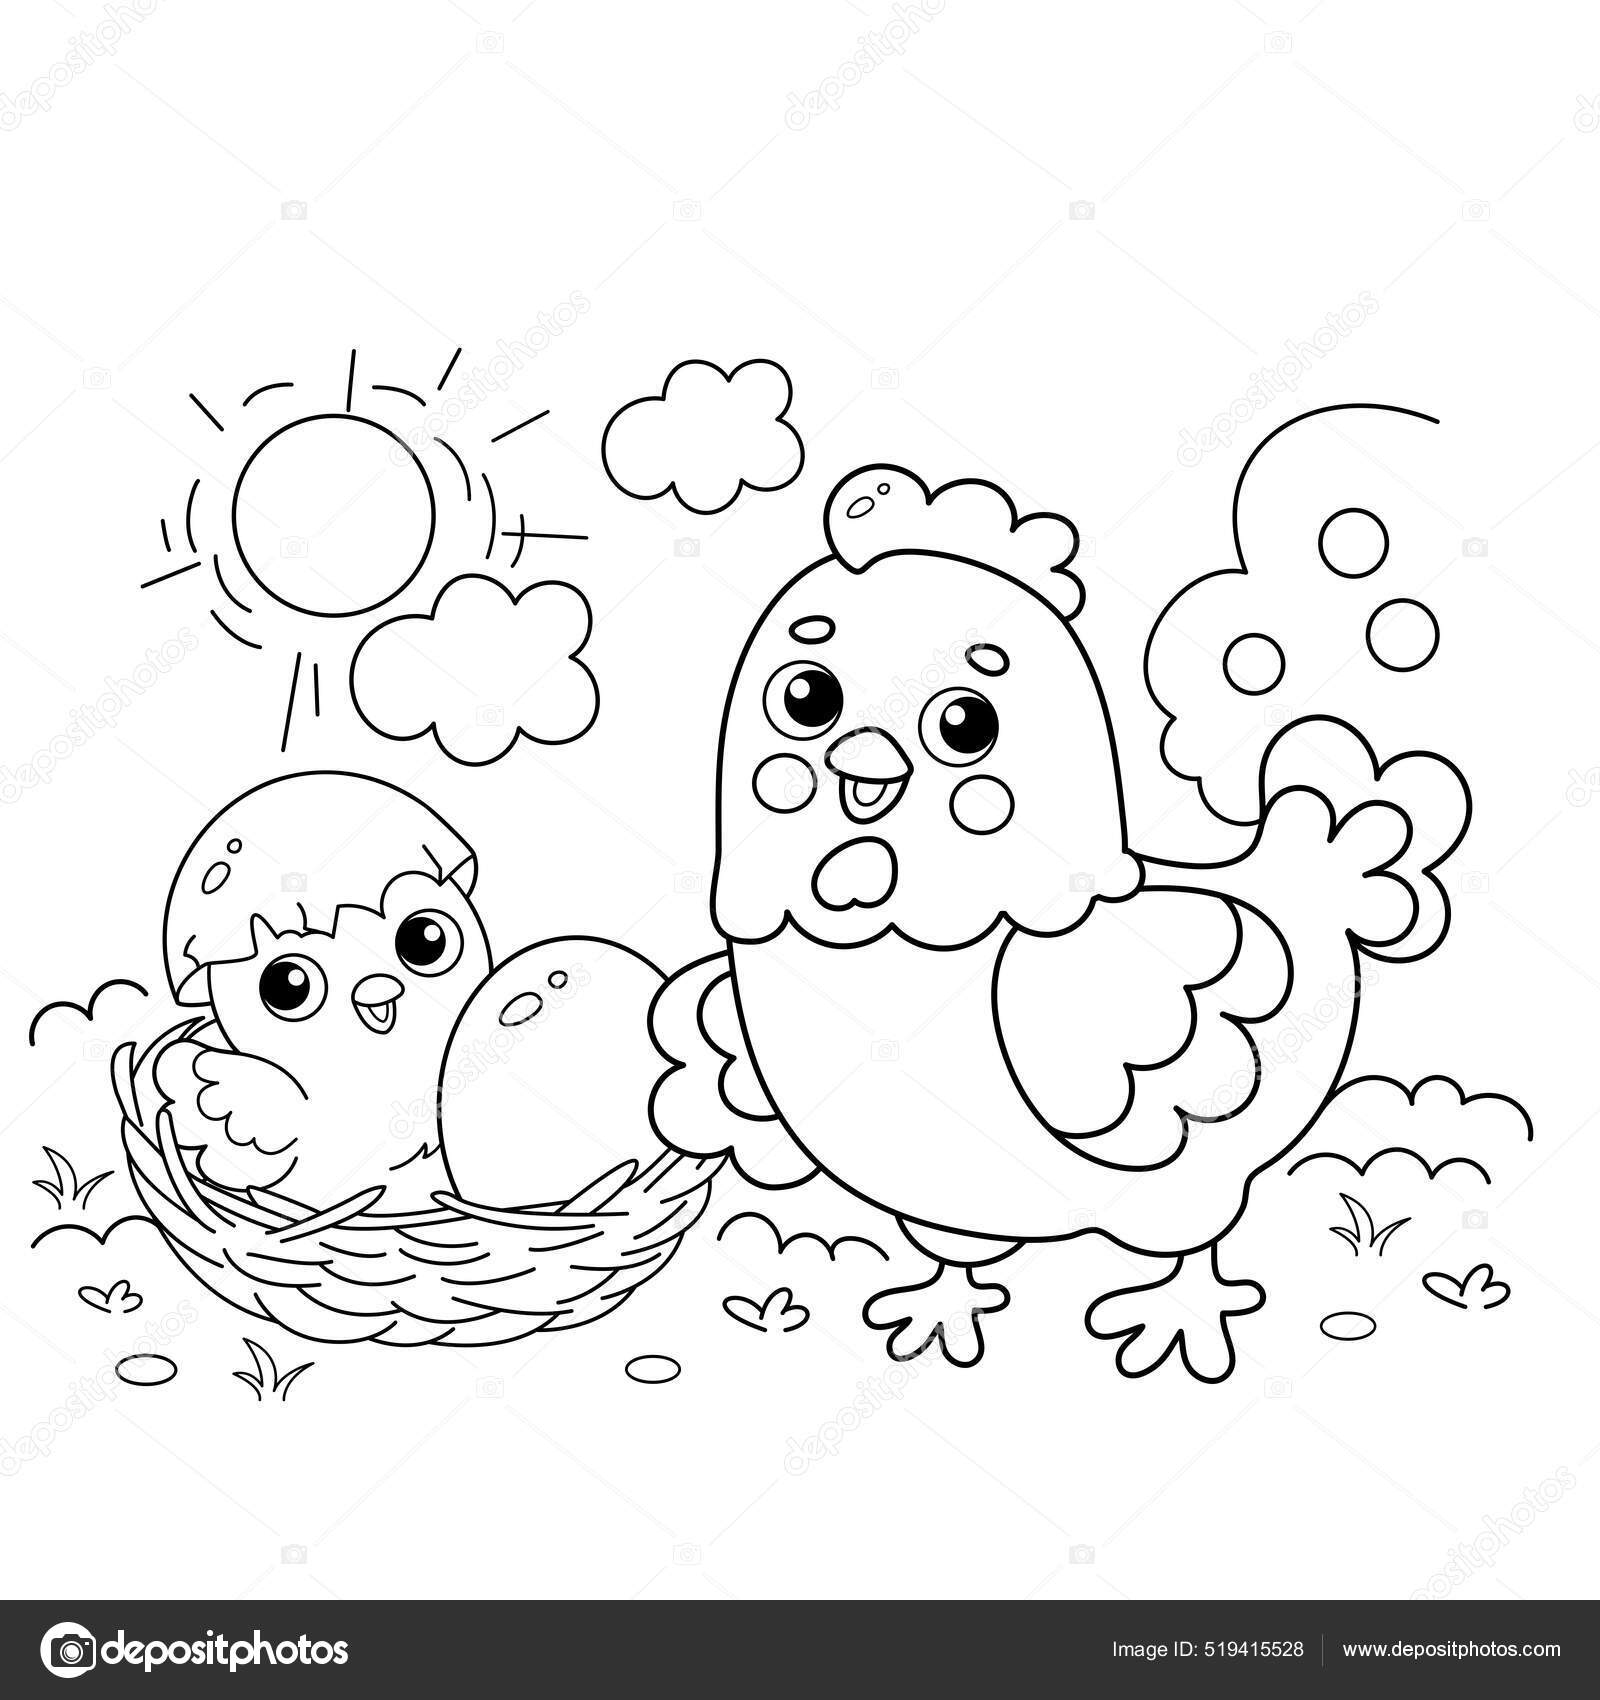 Galinha com ilustração de desenho animado colorido de ovo